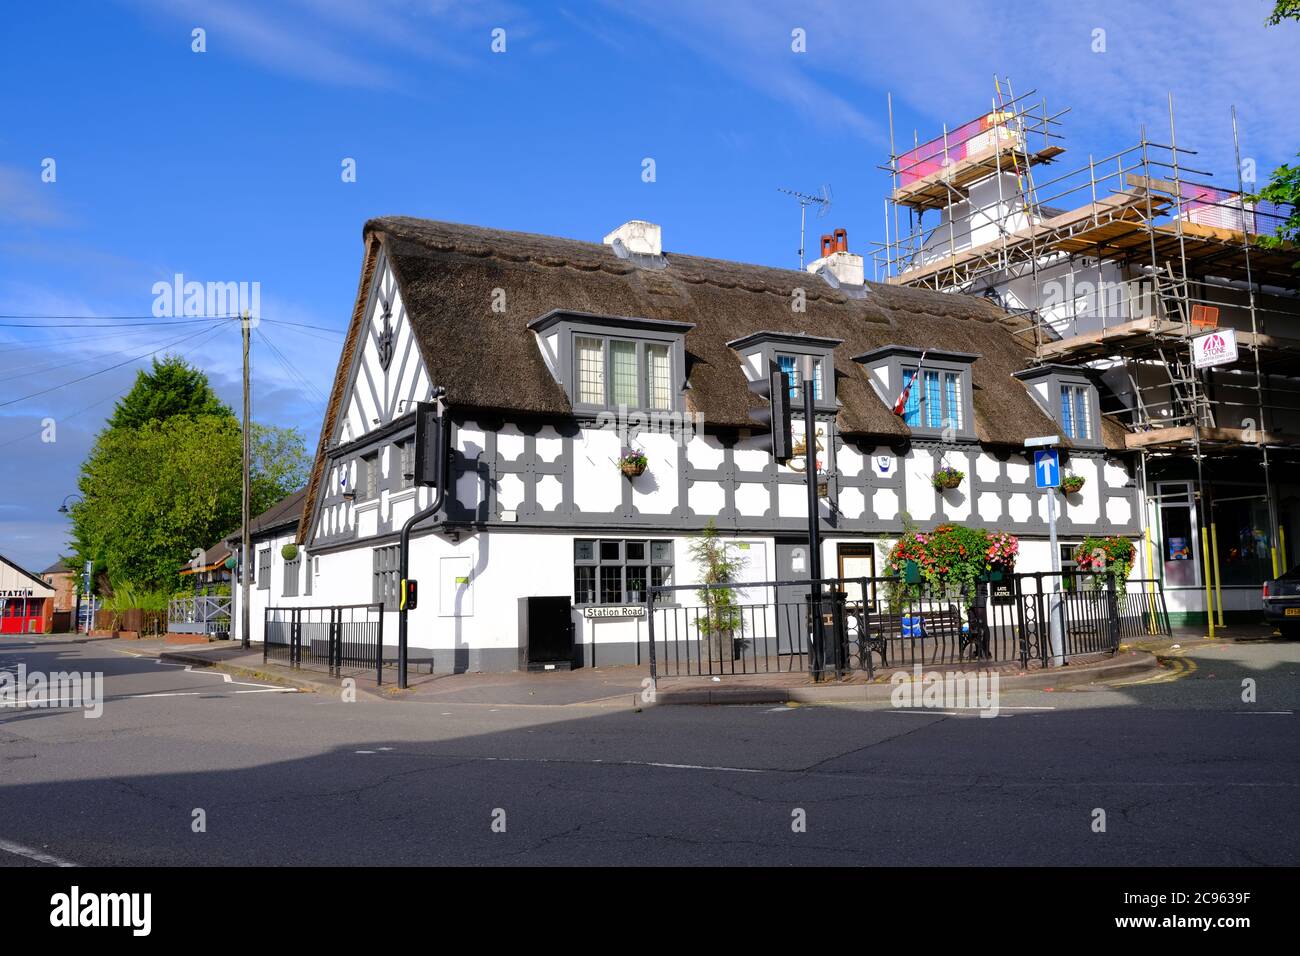 Crown and Anchor Pub in Stone, Staffordshire. Der Ort geschlossen wegen Bruch Regierungsvorschriften und verursacht COVID-19 Ausbruch unter den Anwohnern. Stockfoto